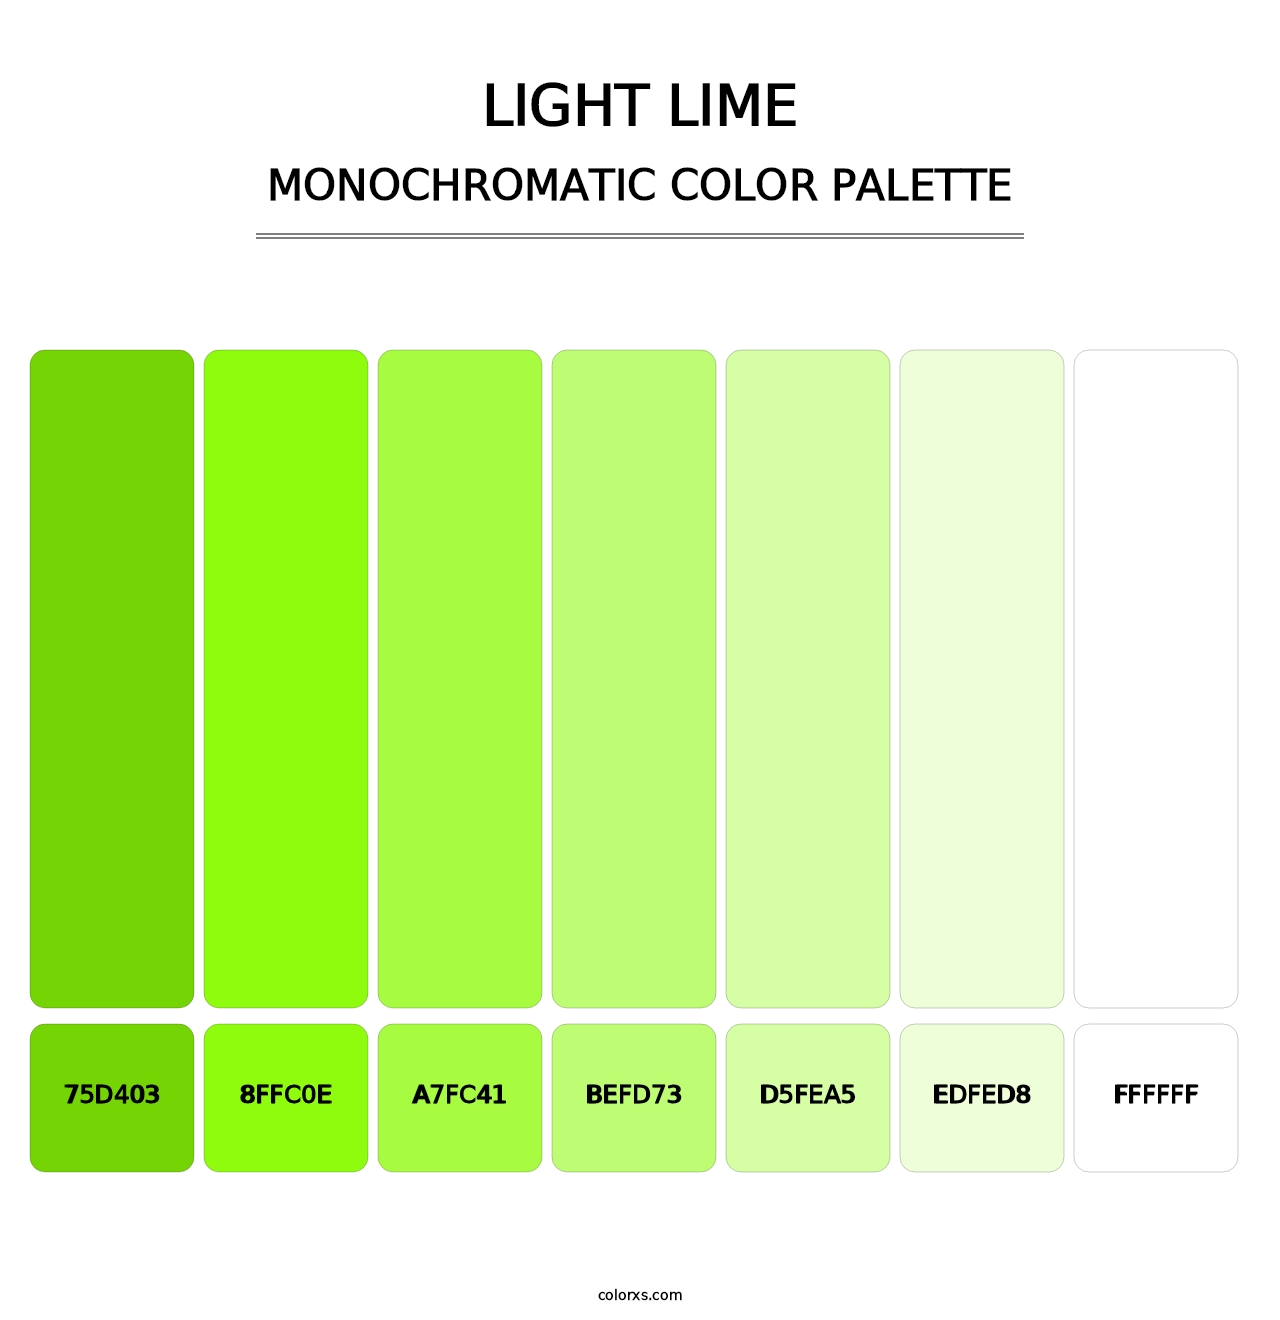 Light Lime - Monochromatic Color Palette